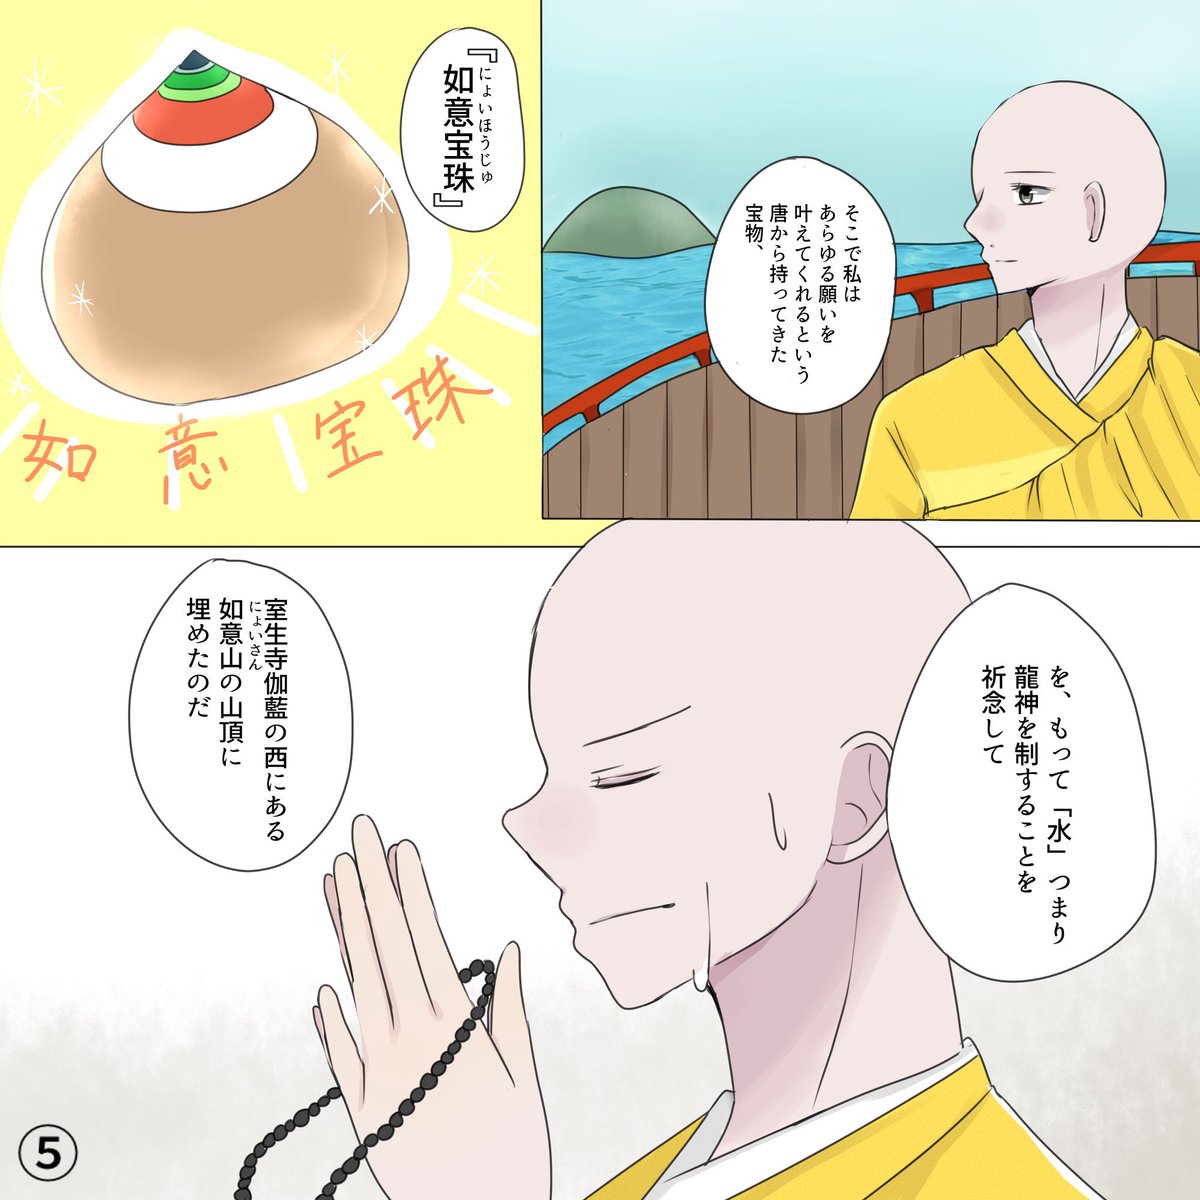 奈良県の室生寺について書かせていただきました!最近身近に感じるSDGsが関係してる…?読んでみてください!
(2/2)
他の漫画も読めます!@narakankopuromo

#漫画でみる奈良の歴史 #PR 